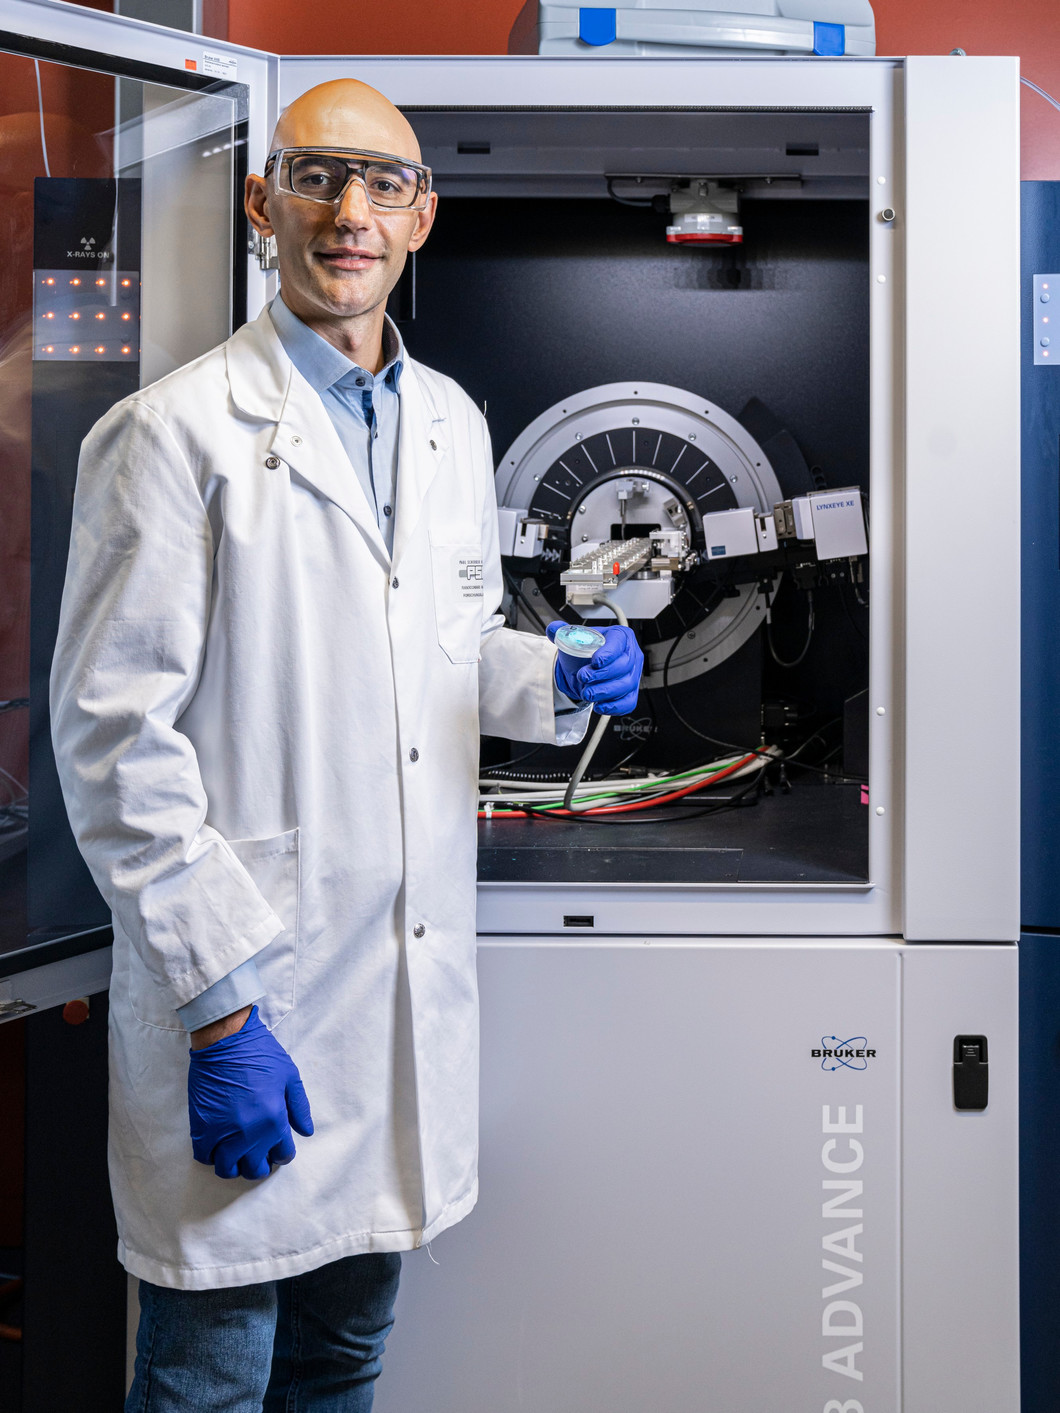 Marco Ranocchiari am Röntgendiffraktometer seiner Arbeitsgruppe. Hier untersuchen er und seine Mitarbeitenden routinemässig pulverförmige MOFs: metallorganische Gerüstverbindungen, die in den Herstellungsprozessen von Pharmazeutika zum Einsatz kommen könnten.